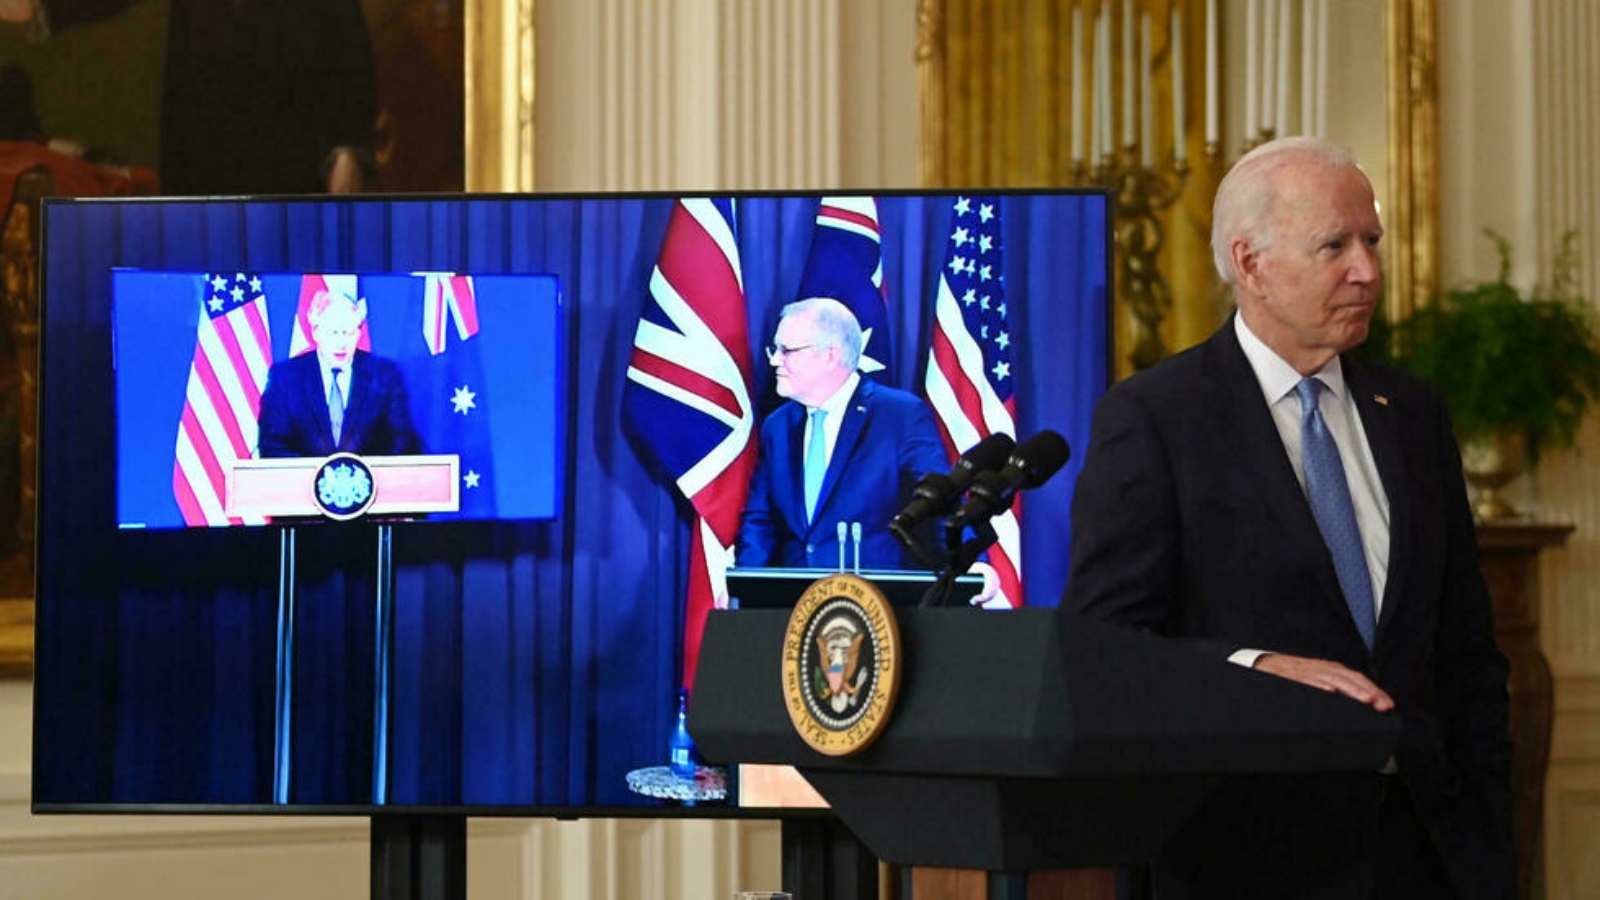 رئيس الوزراء الأسترالي سكوت موريسون (في الوسط) يعلن أن بلاده ستصبح دولة نووية خلال حديثه في مؤتمر صحفي افتراضي مع رئيس الوزراء البريطاني بوريس جونسون (على اليسار) والرئيس الأمريكي جو بايدن.